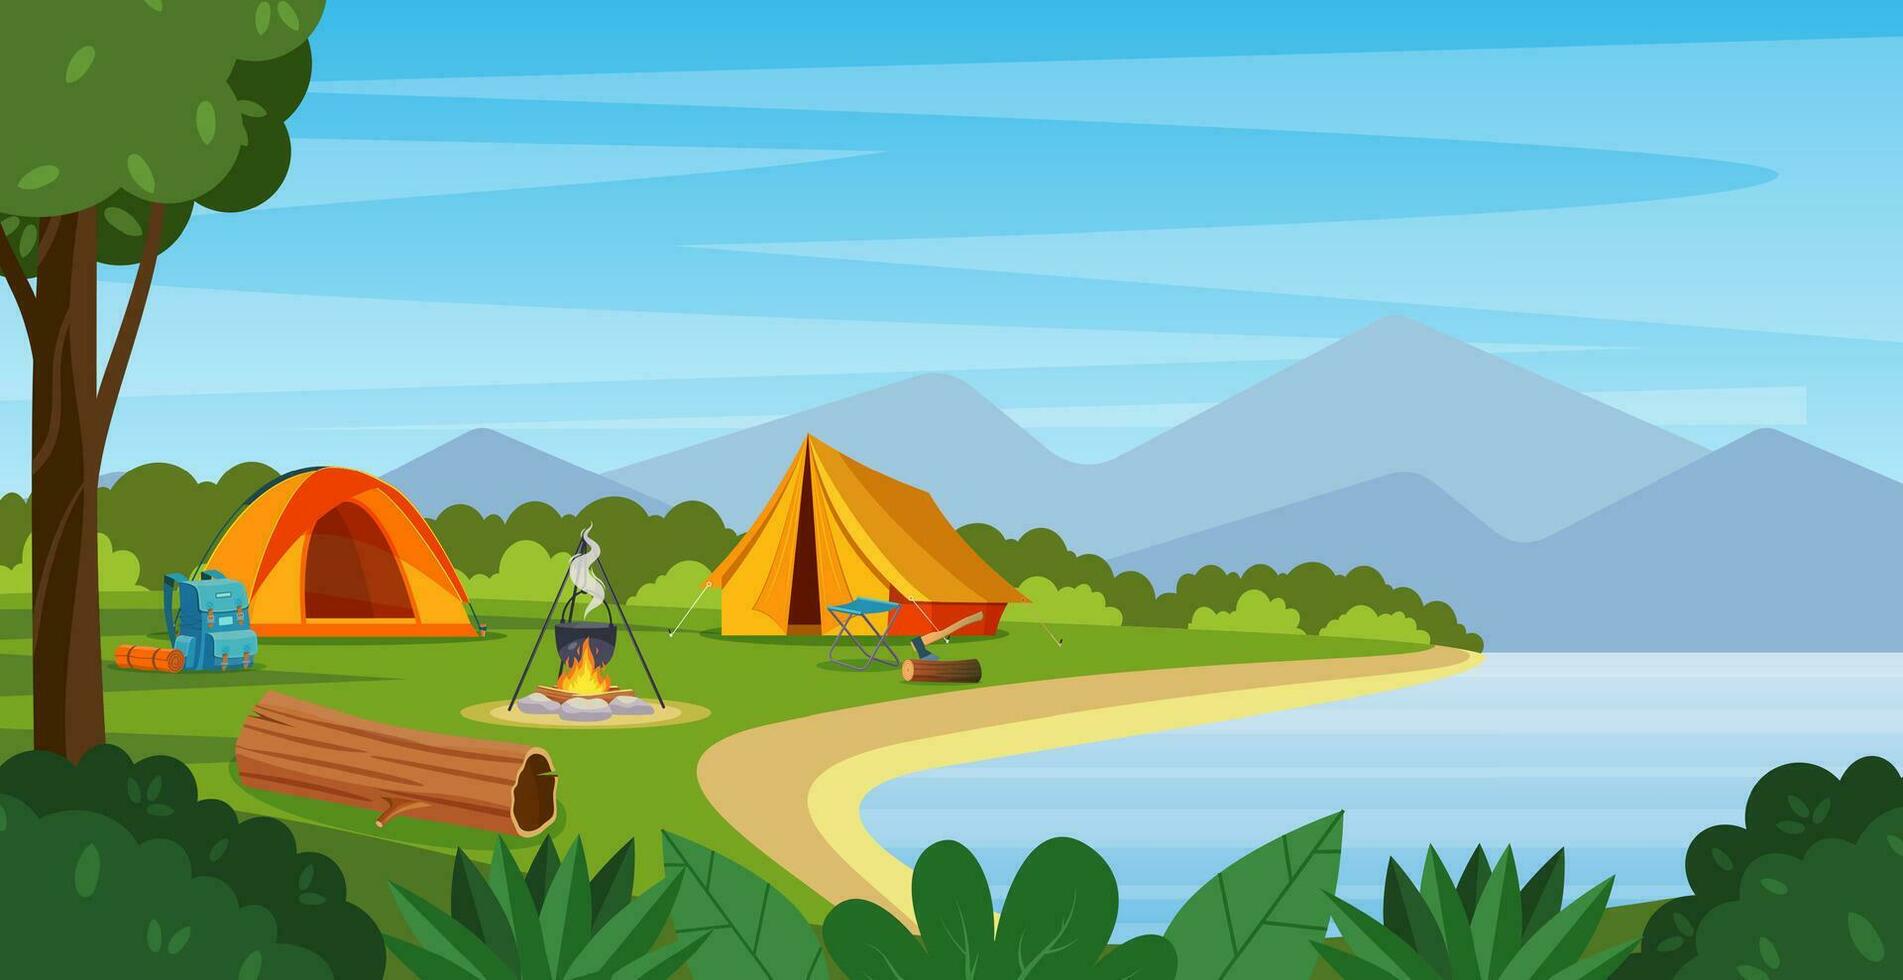 sommar läger med bål, tält, ryggsäck . tecknad serie landskap med fjäll, skog och campingplats. Utrustning för resa, vandring. vektor illustration i platt stil